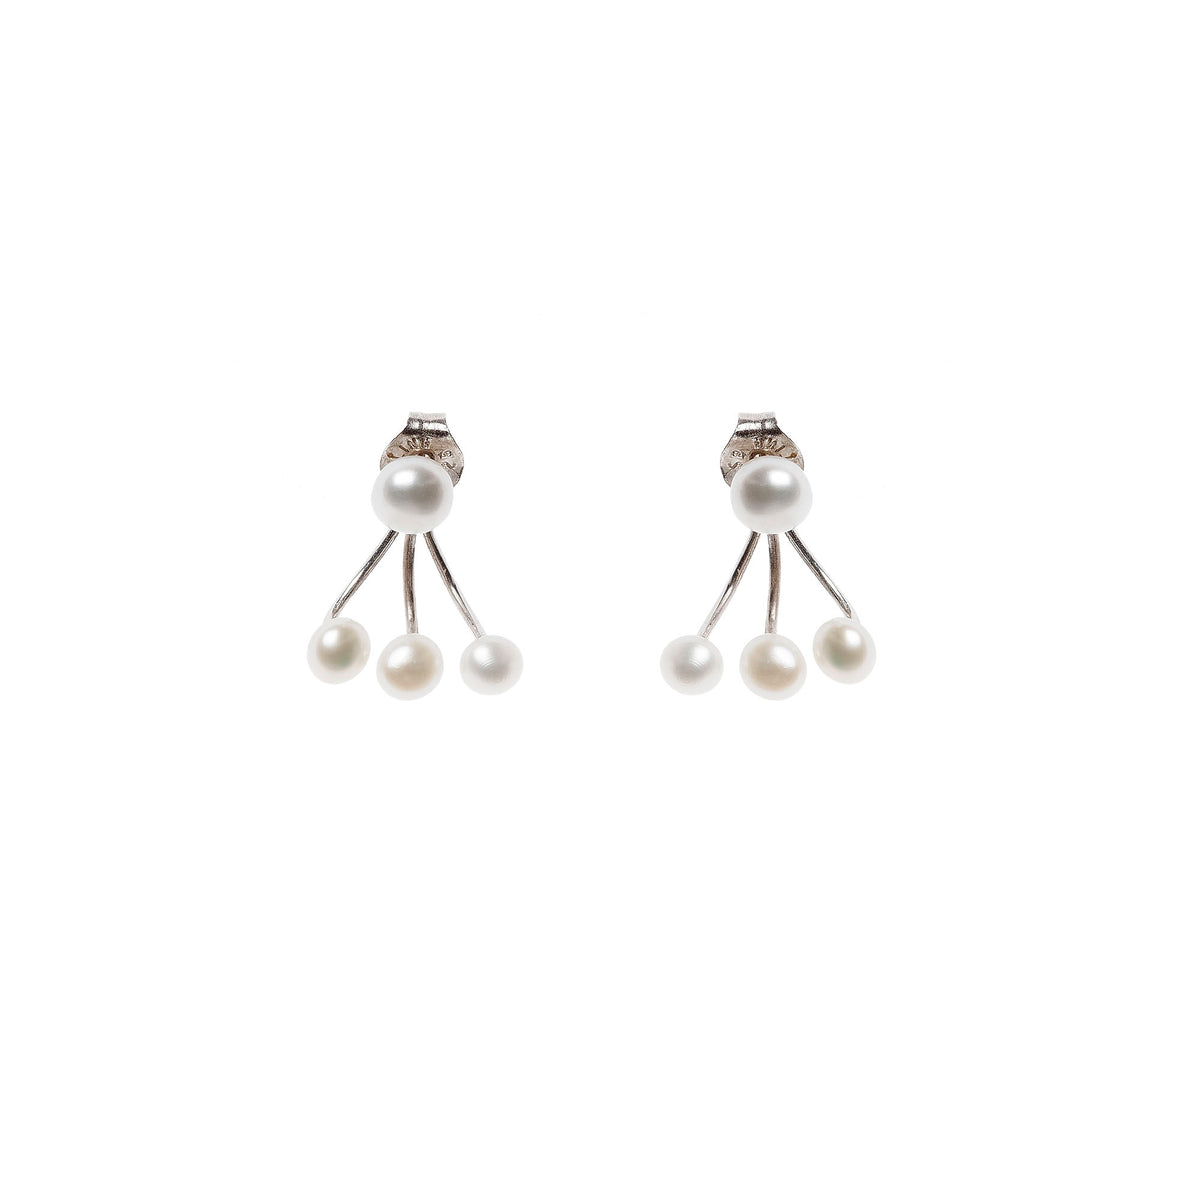 Boucles d'oreilles en argent avec 4 petites perles, véritable indispensable pour les mariages